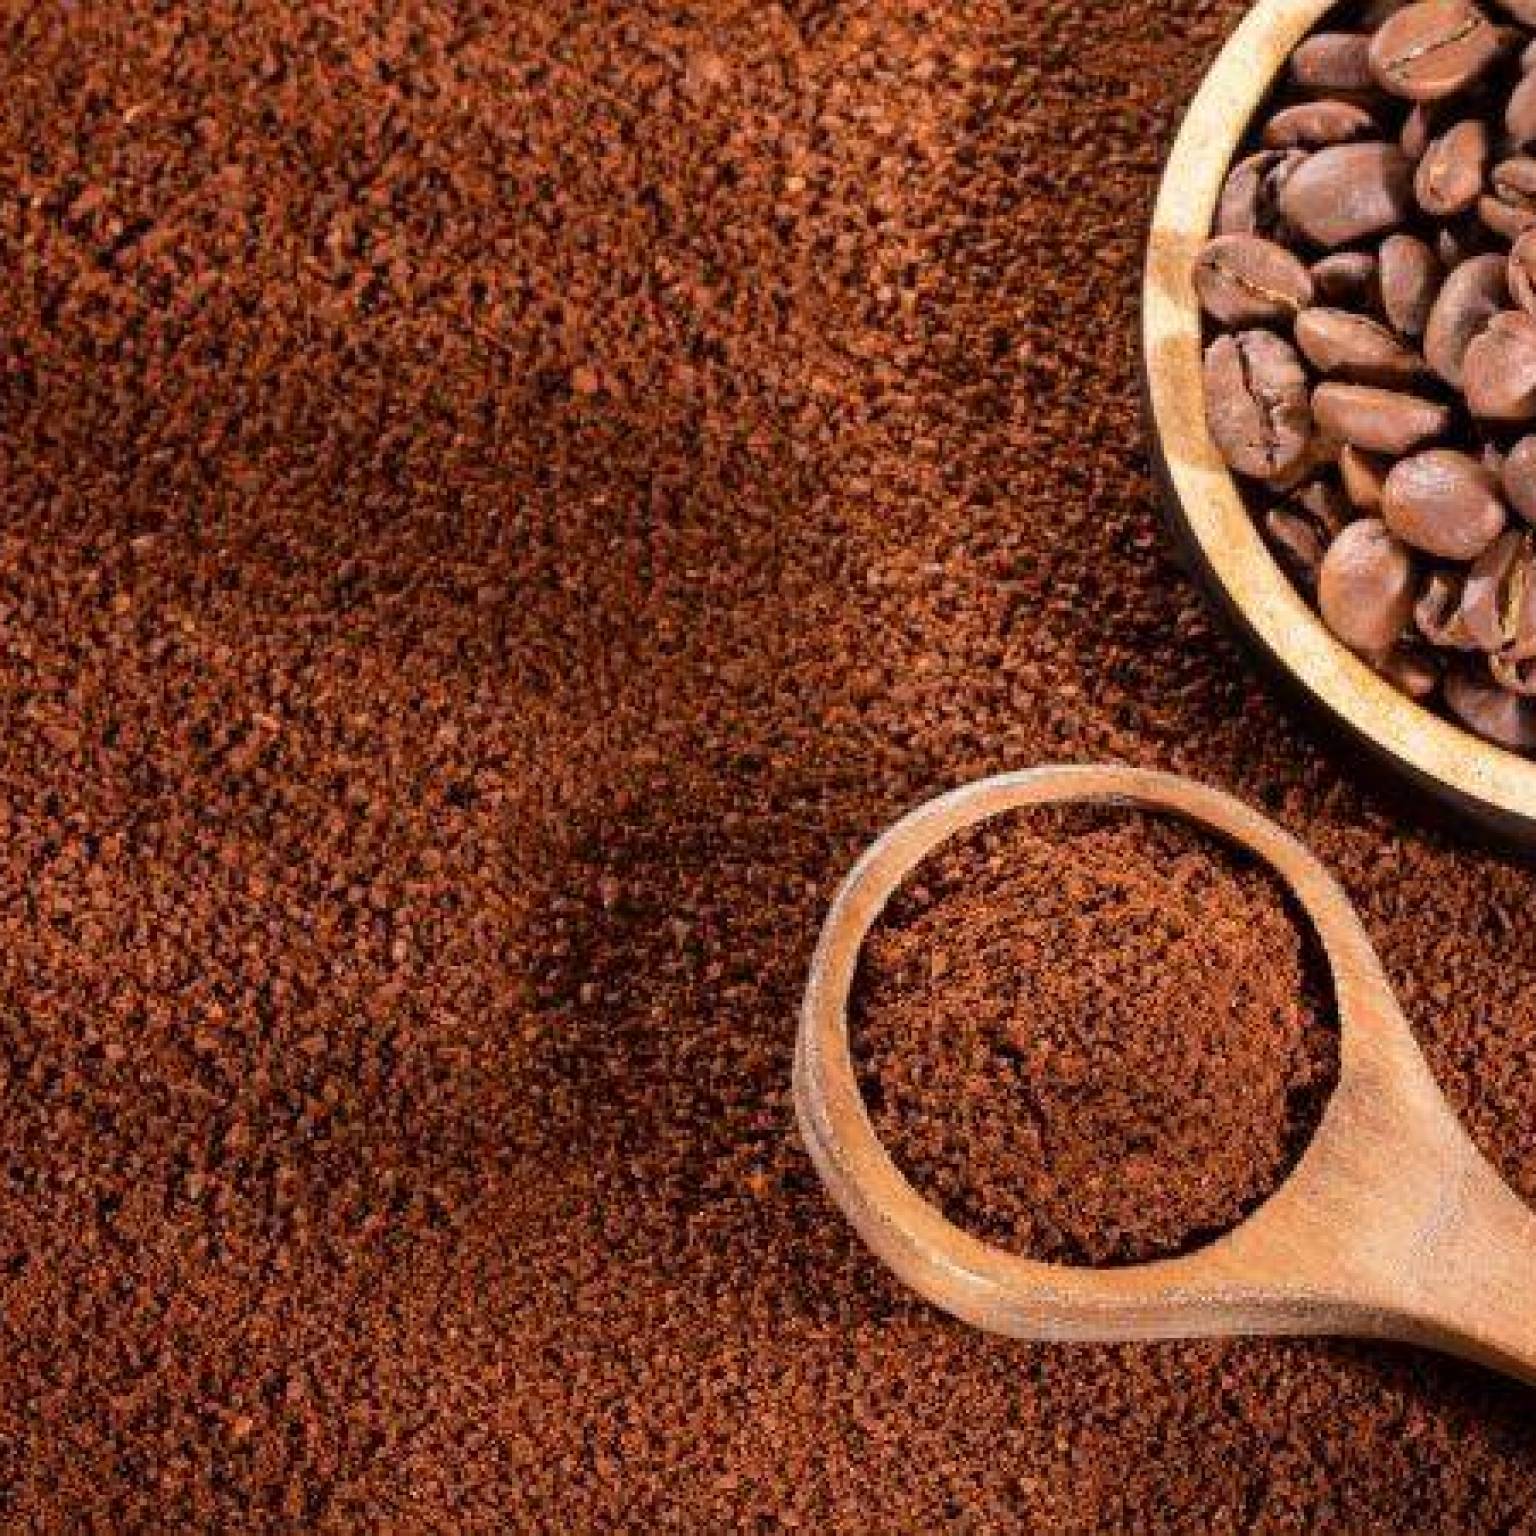 Kawa mielona - wybierz najlepszej jakości produkty!